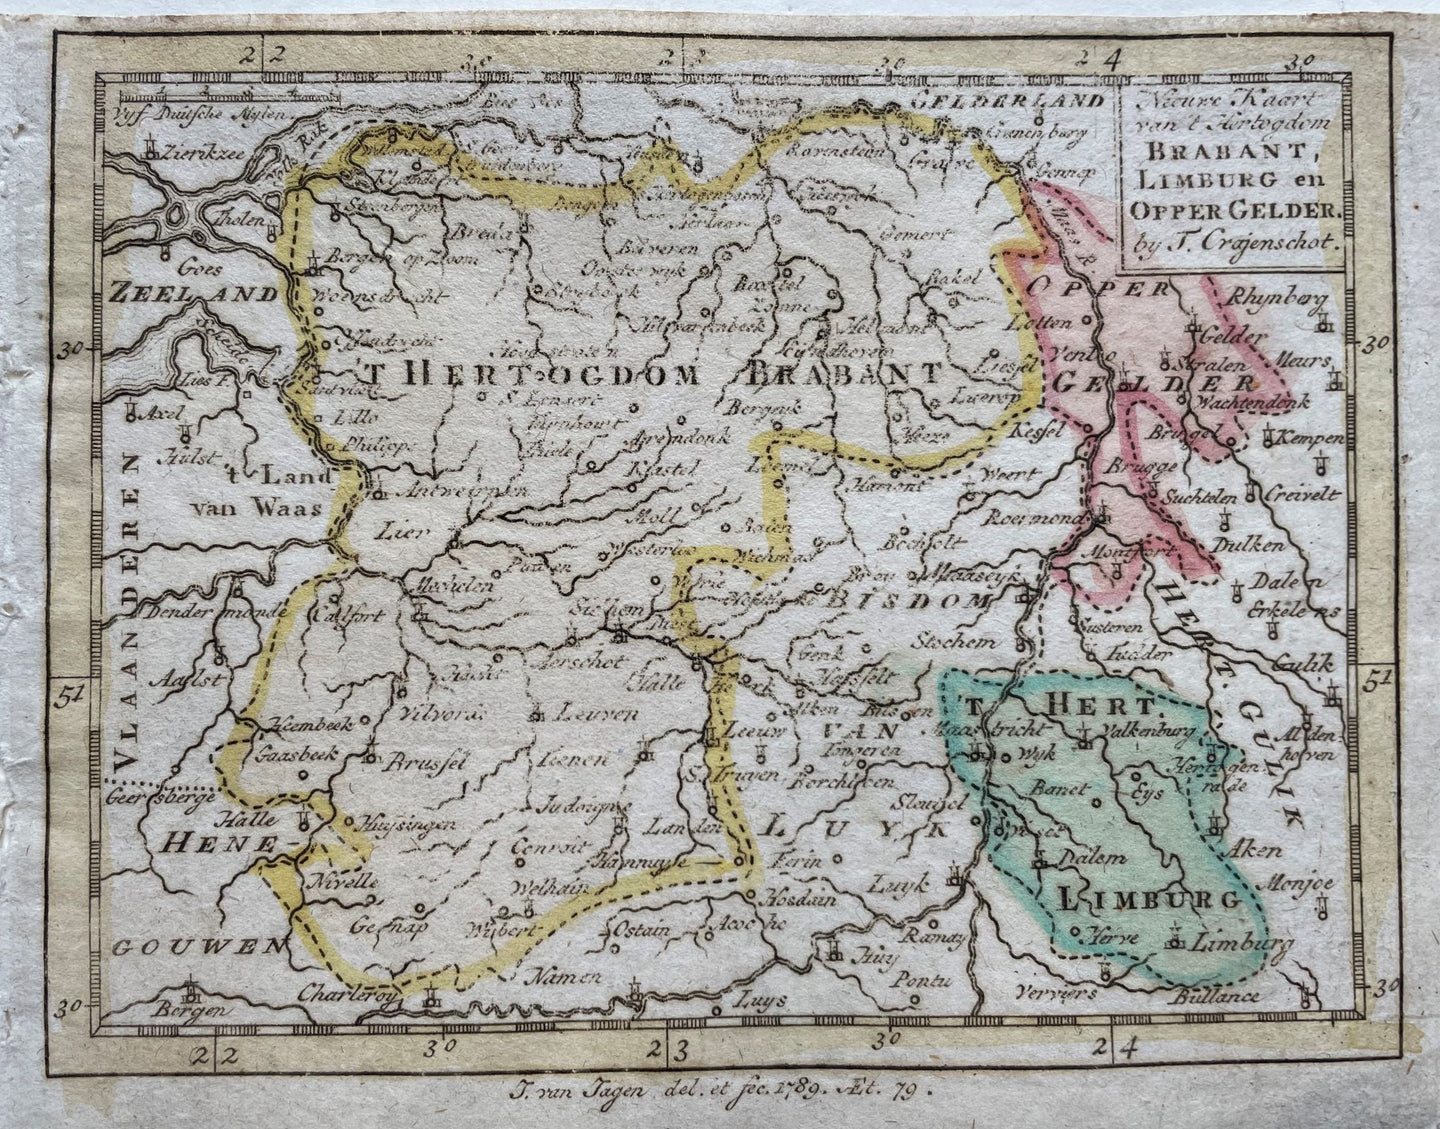 Brabant Limburg - J van Jagen / T Crajenschot - 1793